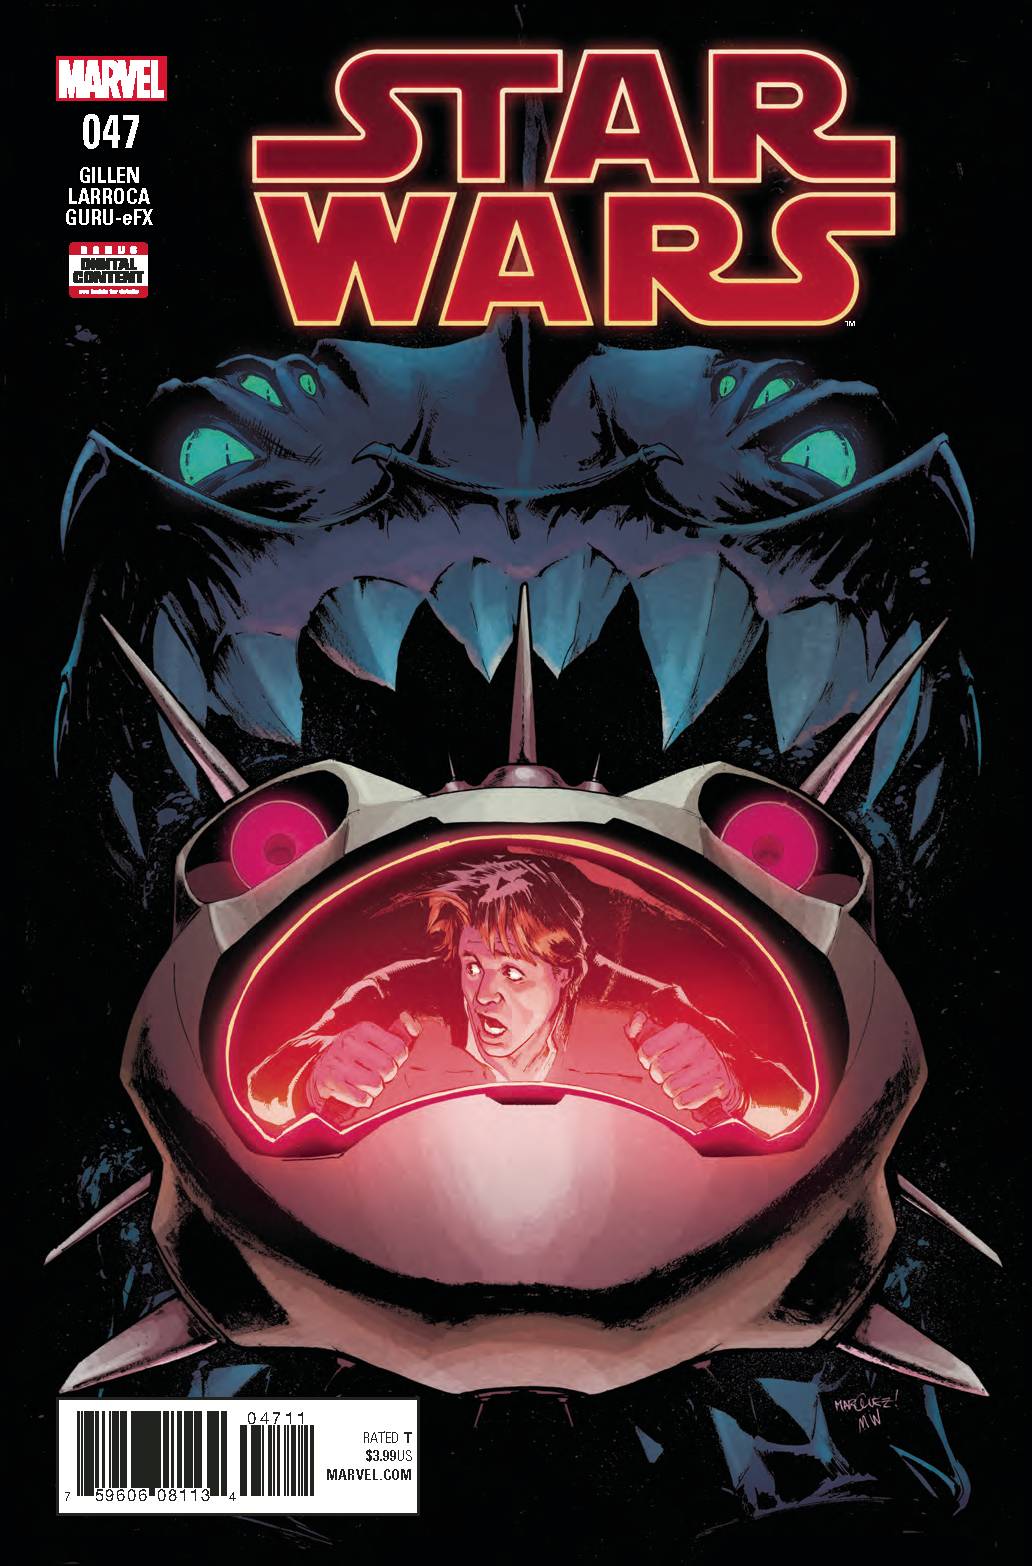 STAR WARS #47 Kieron Gillen David Marquez (05/02/2018) Marvel